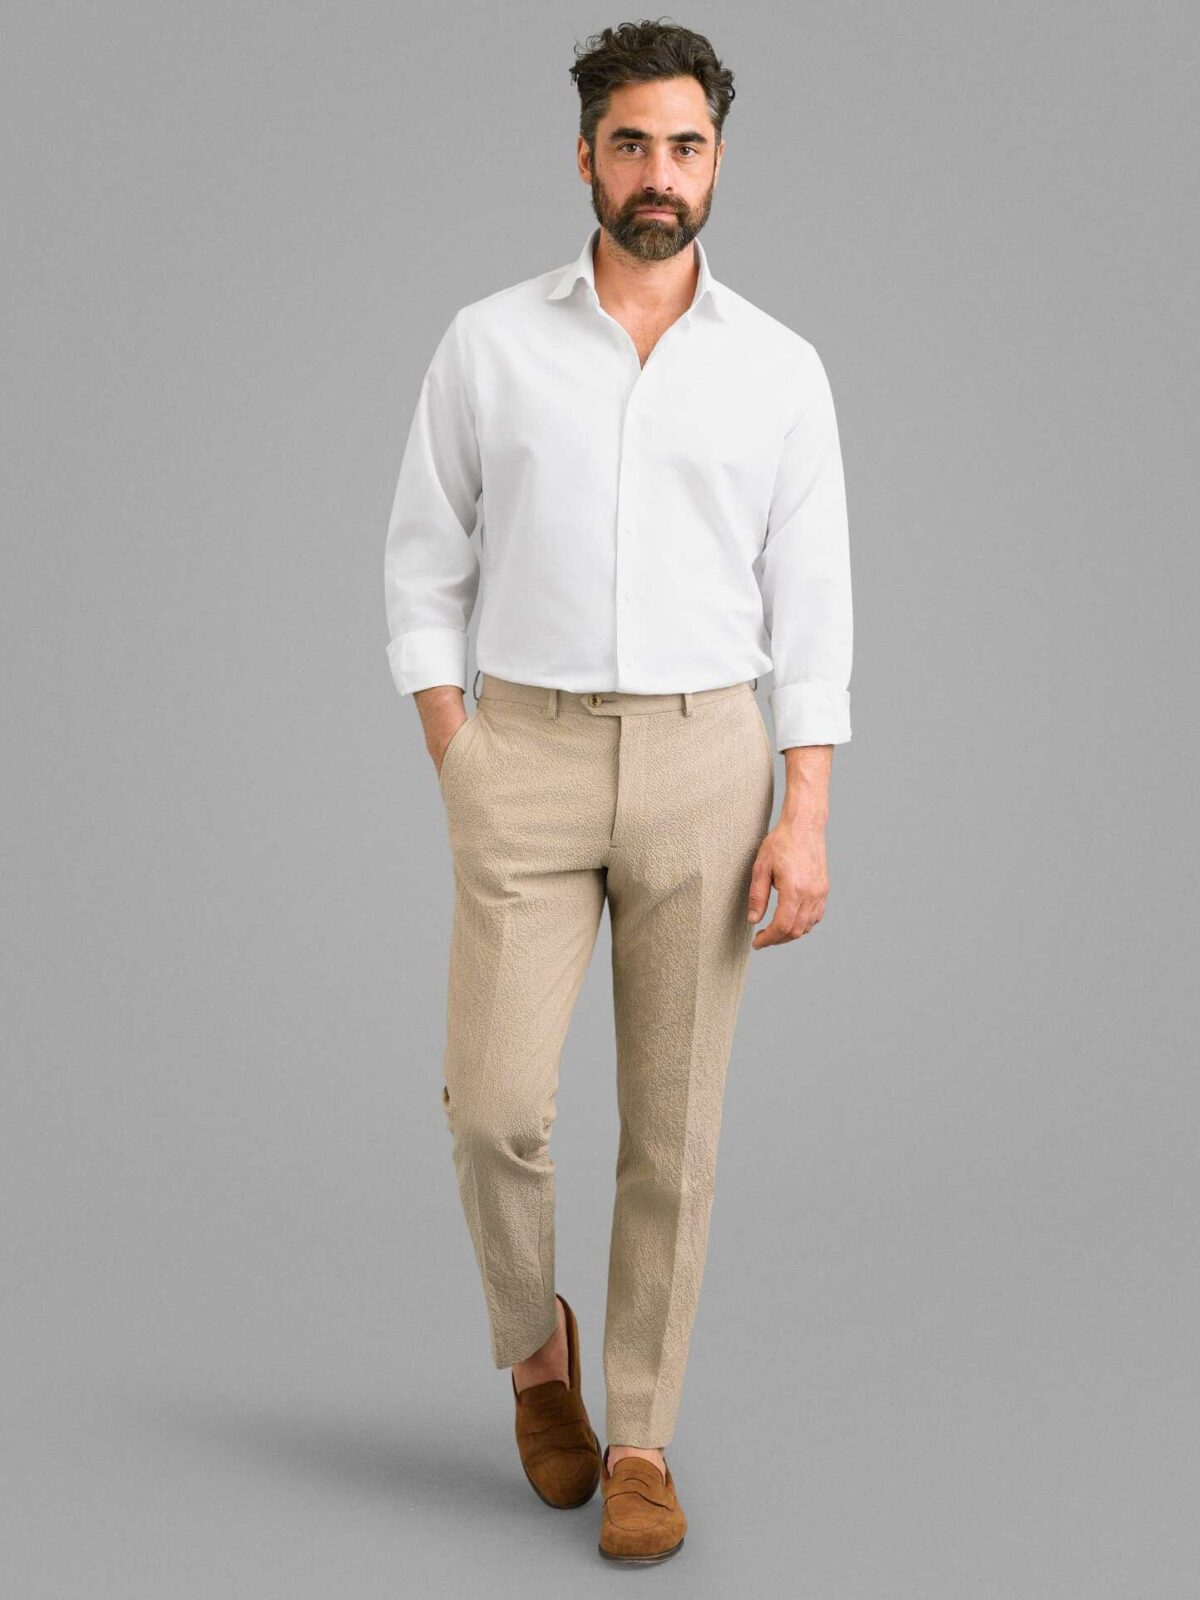 Cotton Linen Blend Retro Elegant Men's Outfits Casual Short - Temu